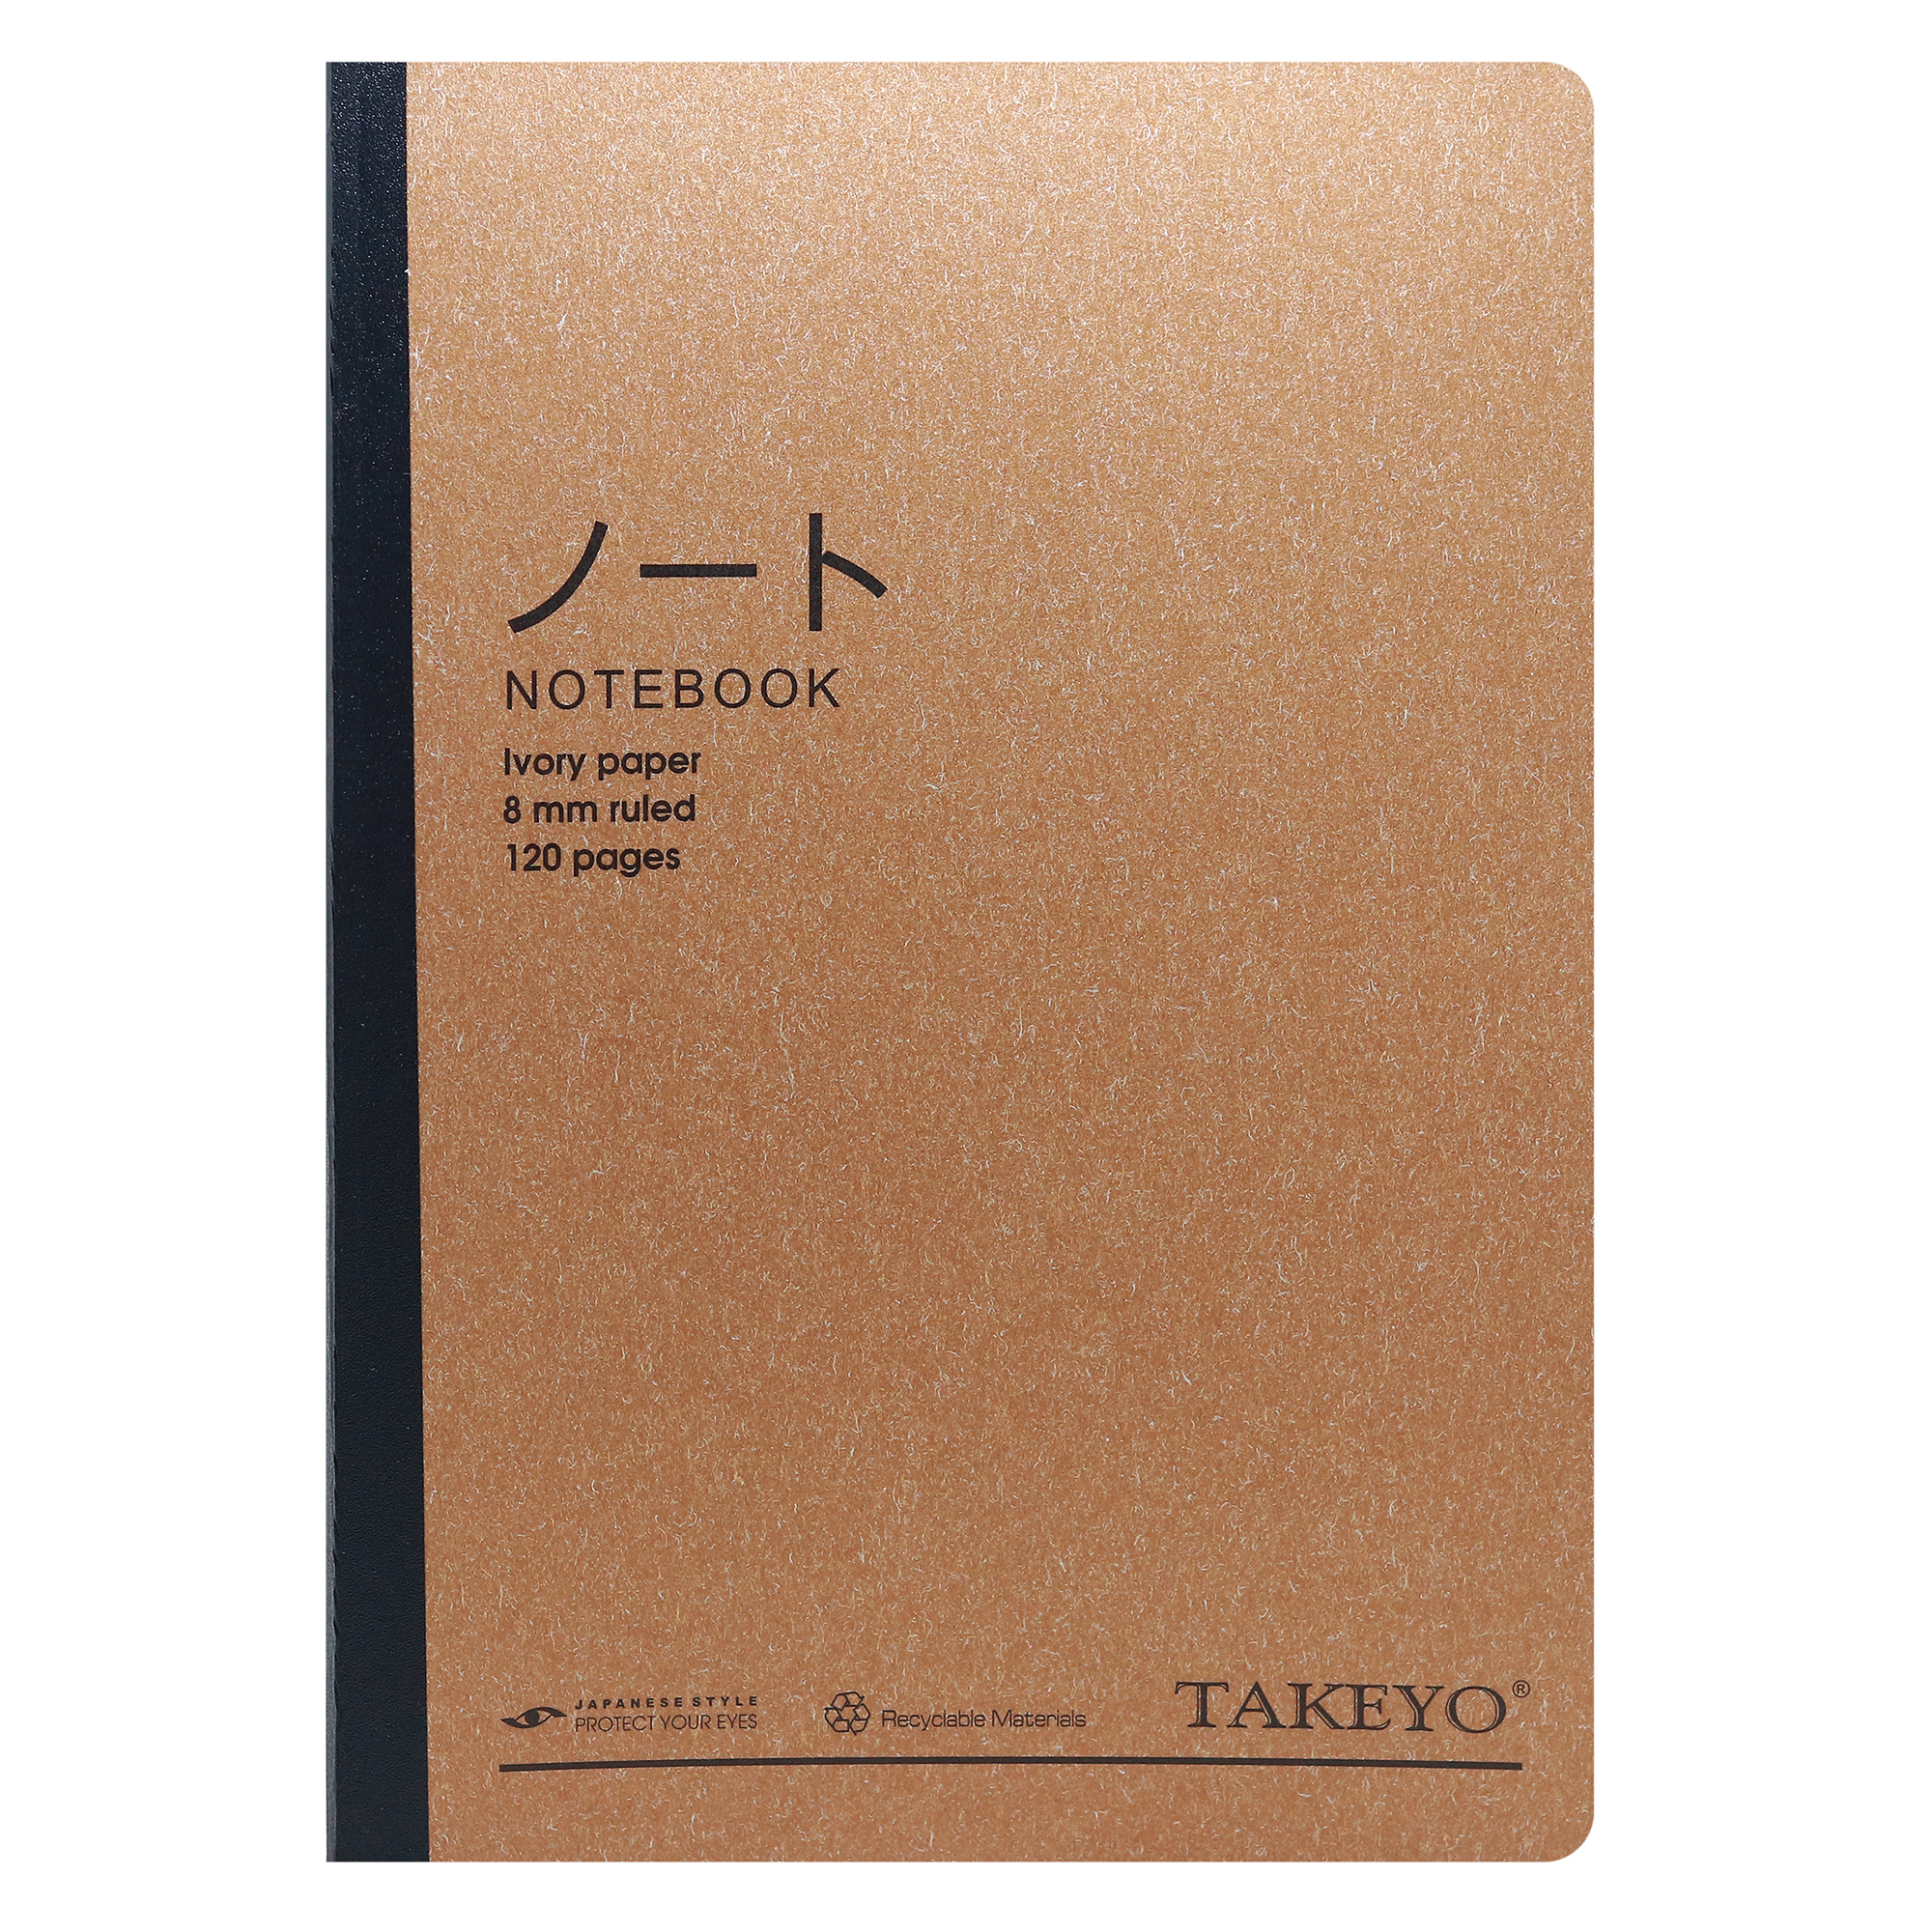 Vở Bìa Khâu B5 Kẻ Ngang Takeyo 120 Trang (Bìa Ngẫu Nhiên)